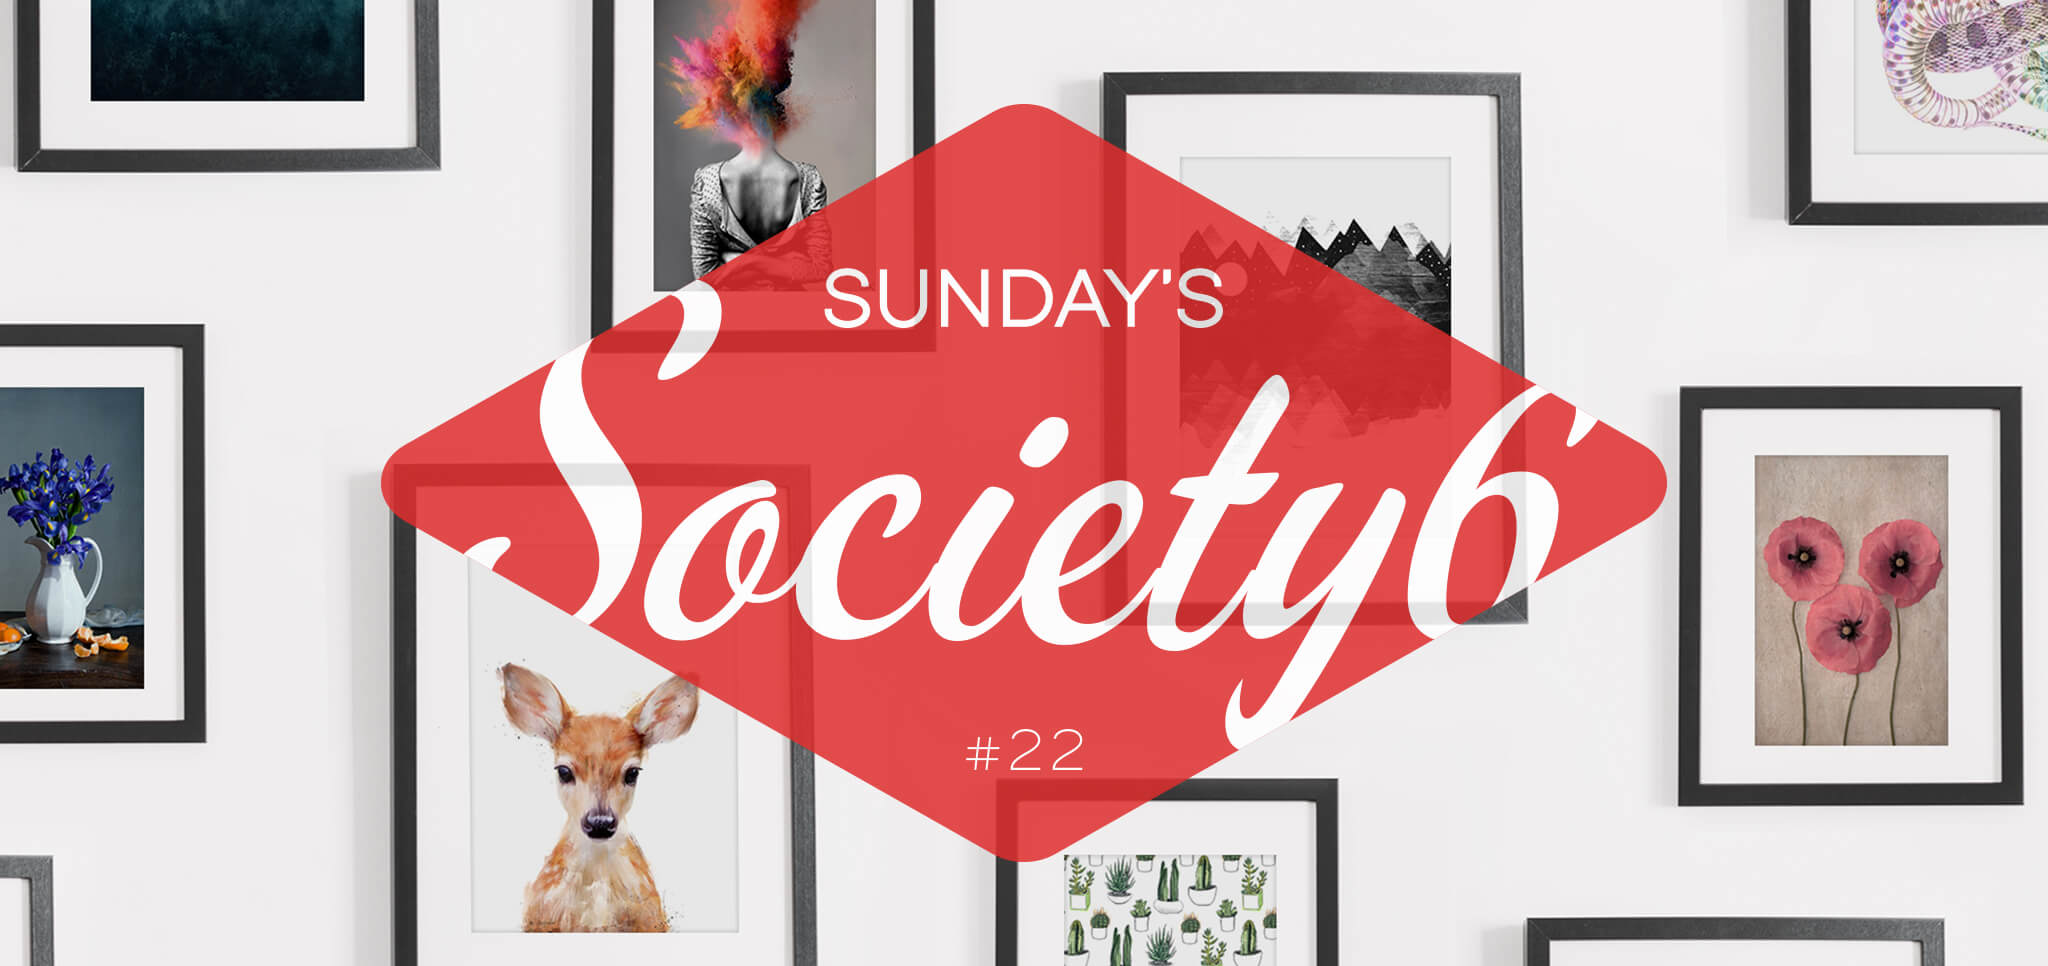 Sunday’s Society6 – #22